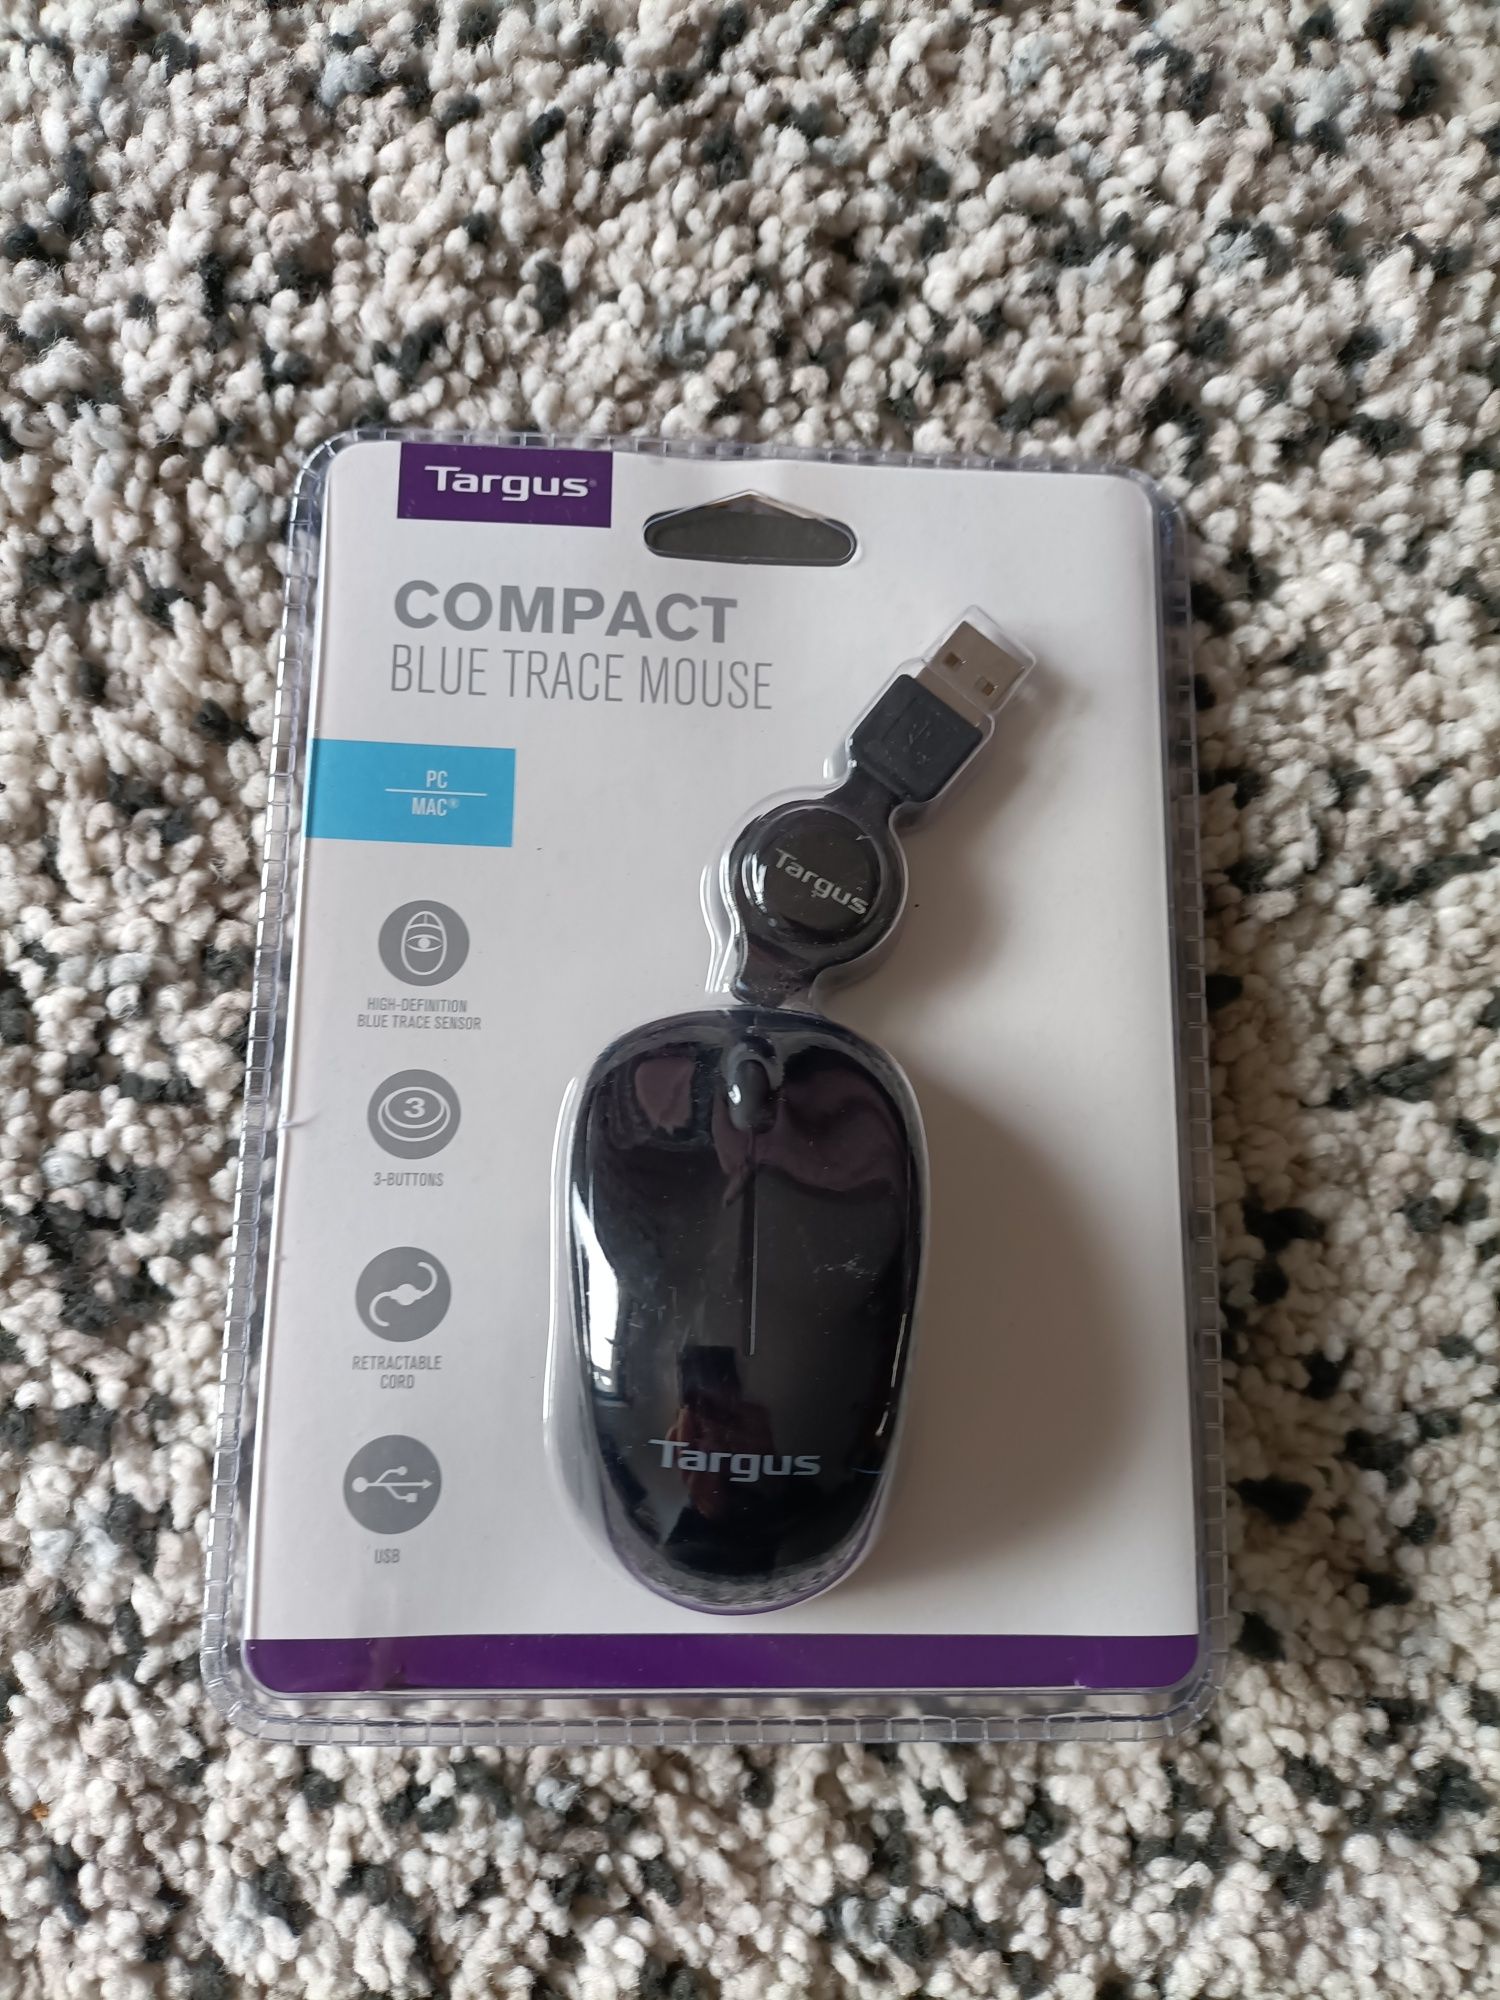 Vendo Rato Computador 
Novo, na embalagem.
Qualquer dúvida e/ou questã